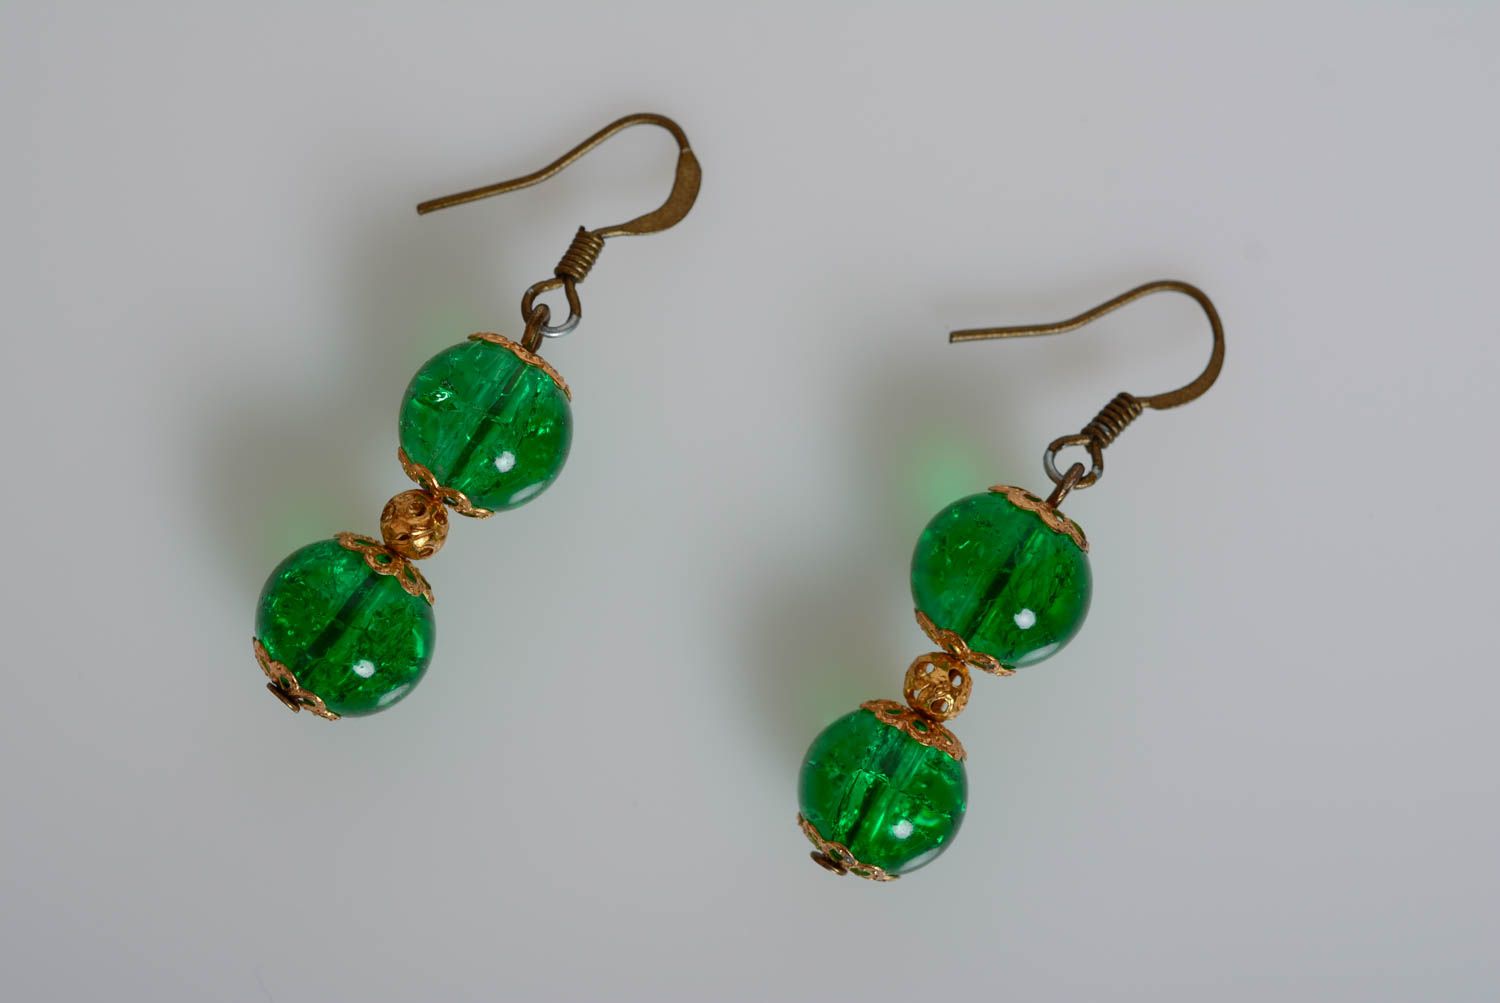 Grüne schöne künstlerische Perlen Ohrringe aus Glas grelle auffallende GHandarbeit foto 1